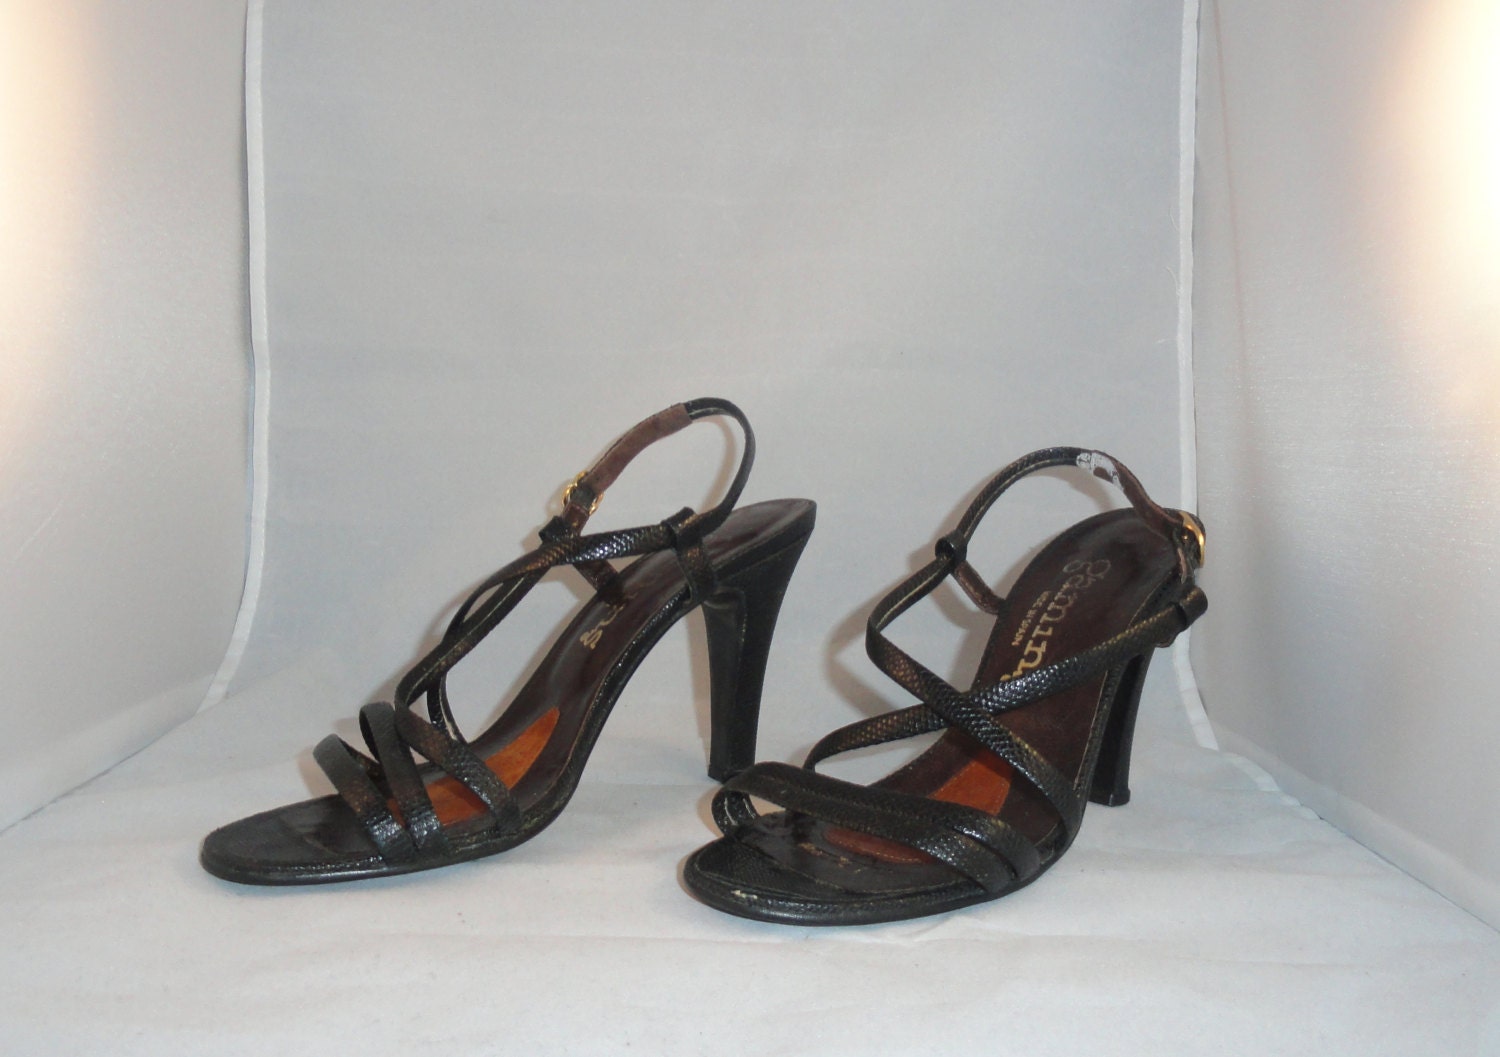 Vintage Shoes 60s High Heel Sandas Gamins Sandals Black | Etsy